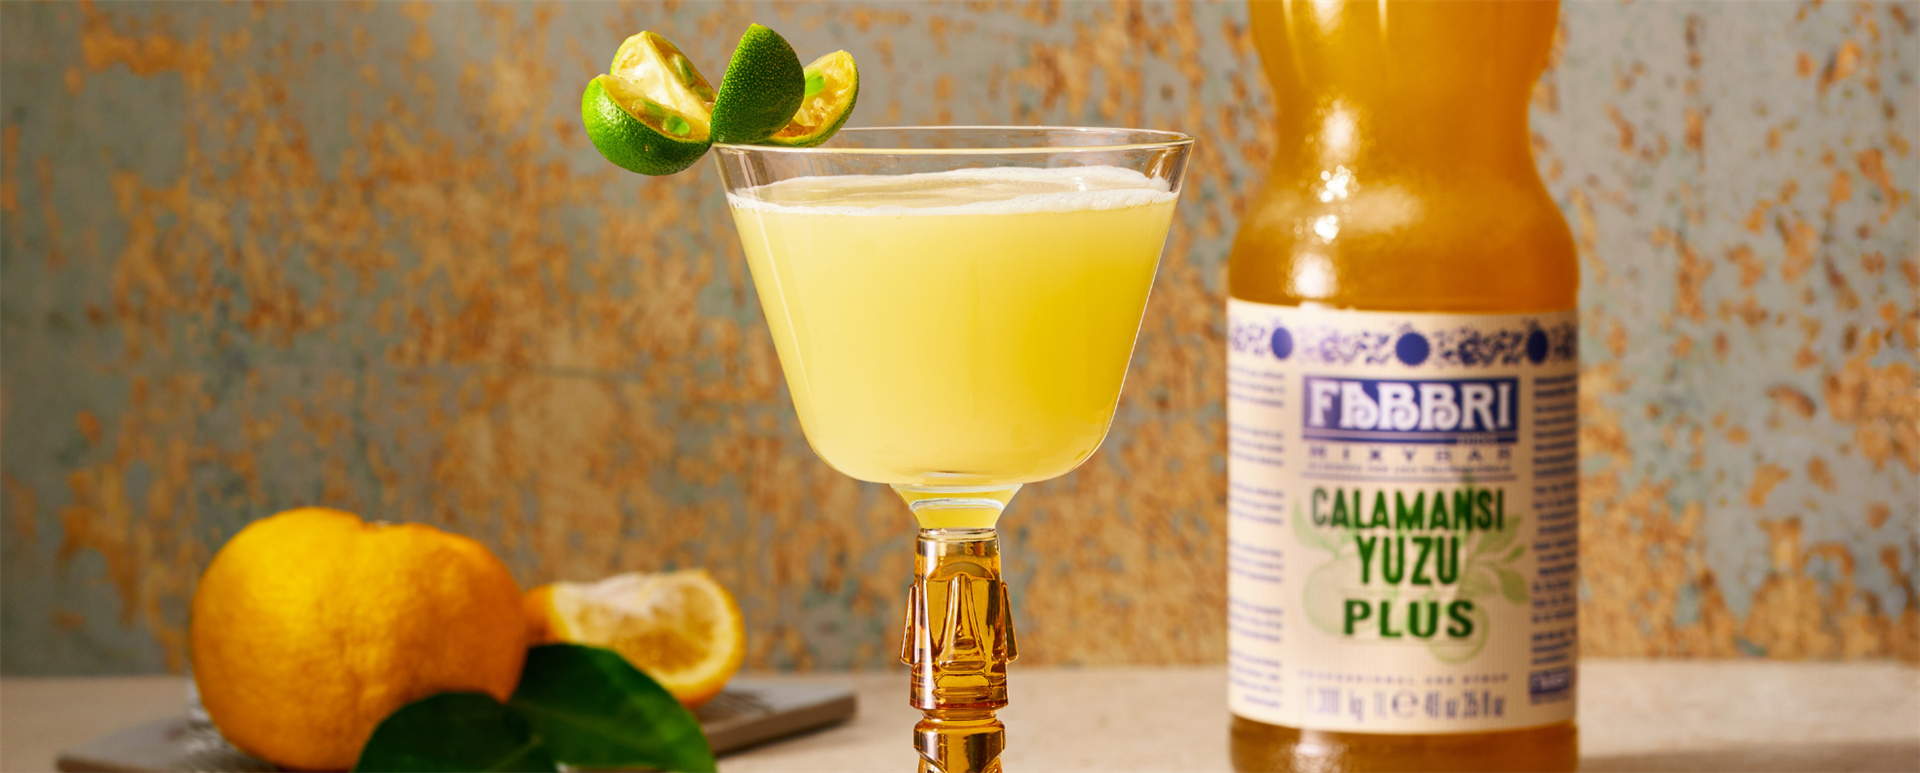 Probieren Sie eine Varietät des klassischen Cocktails Margarita mit dem neuen Mixybar Blaue Agave Bio aus!